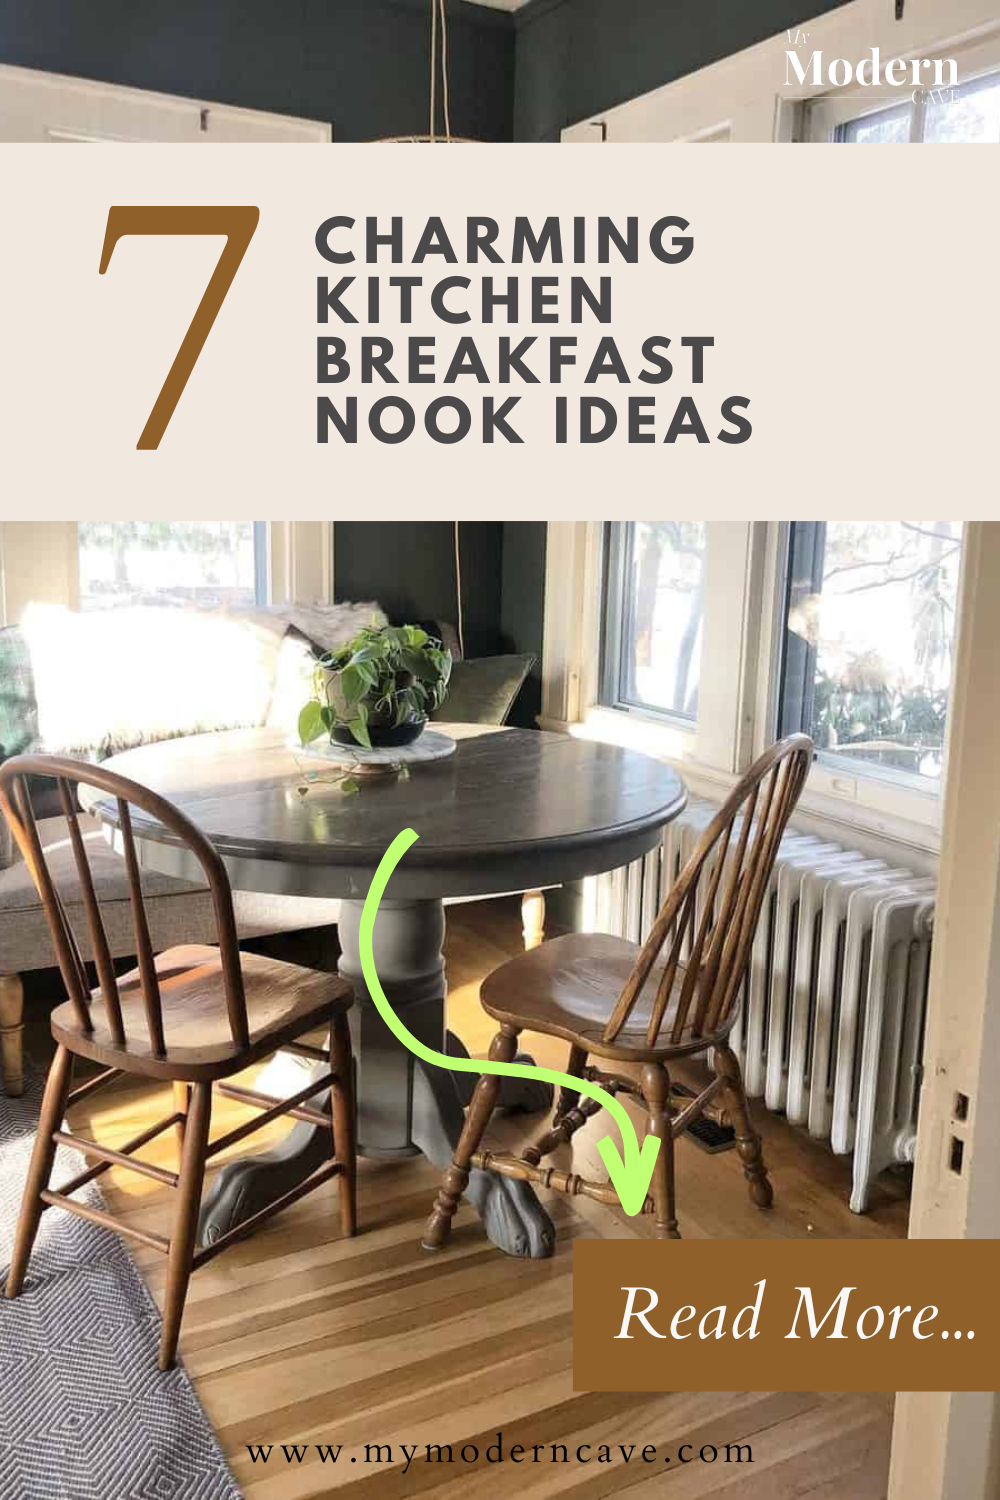 Kitchen Breakfast Nook Ideas Infographic